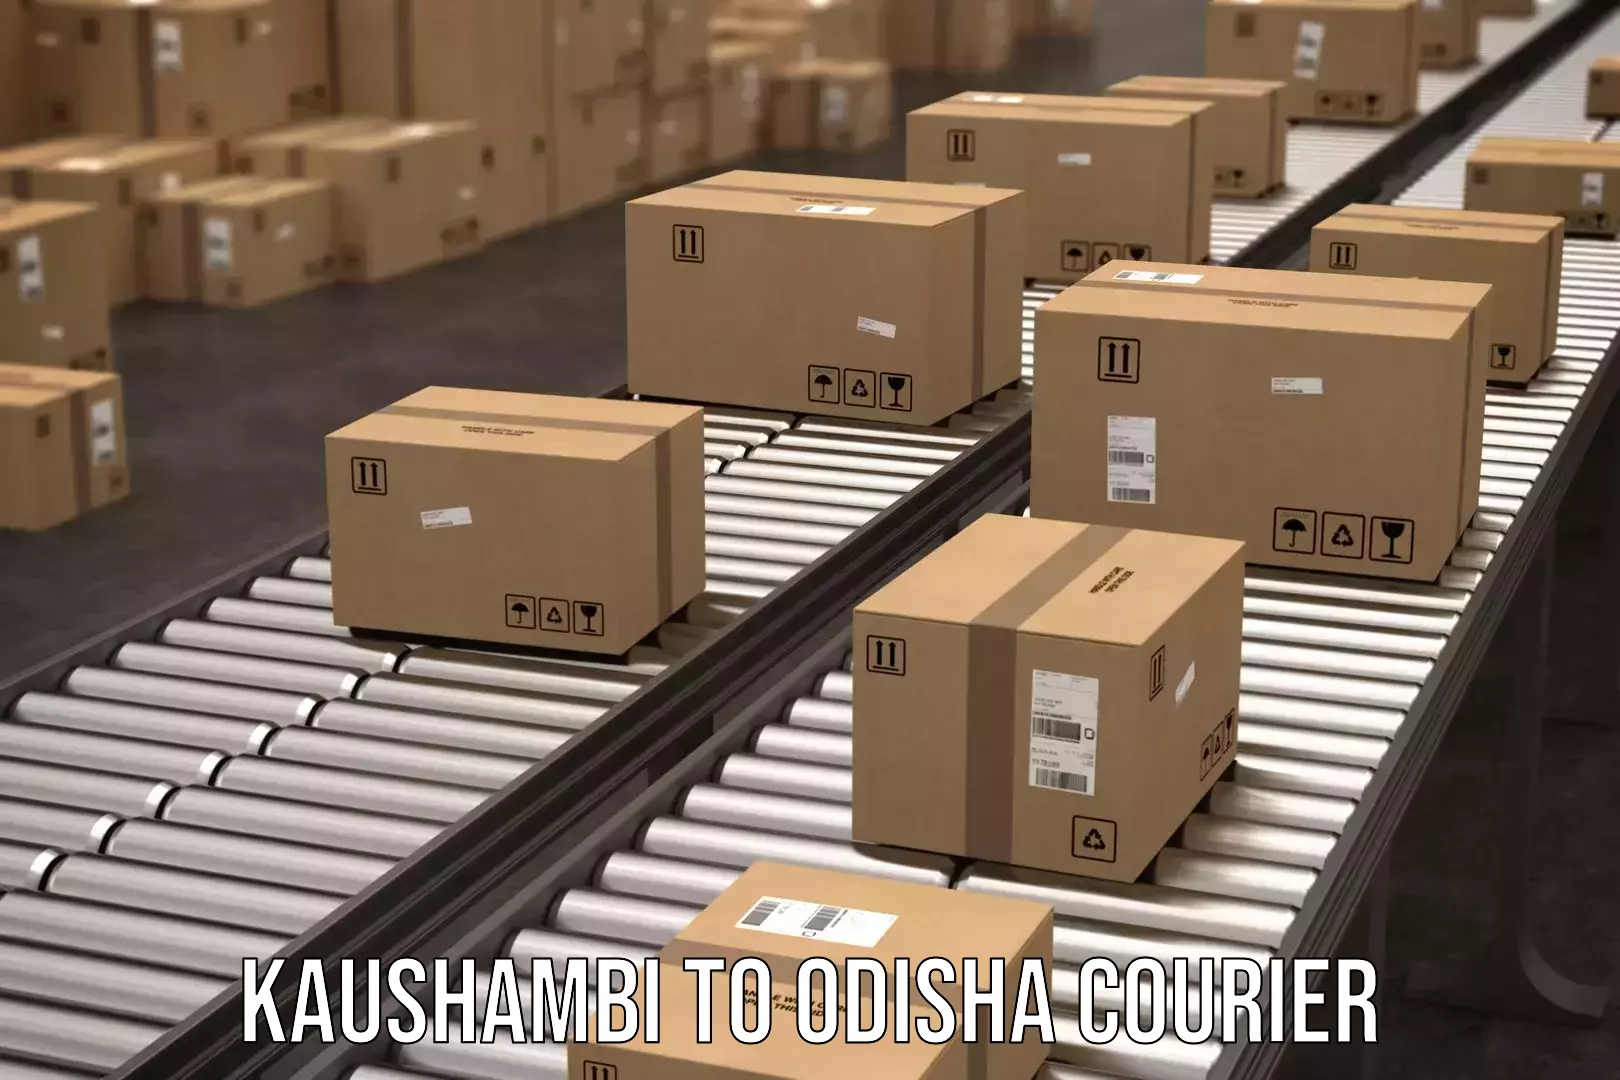 Enhanced shipping experience Kaushambi to Udala